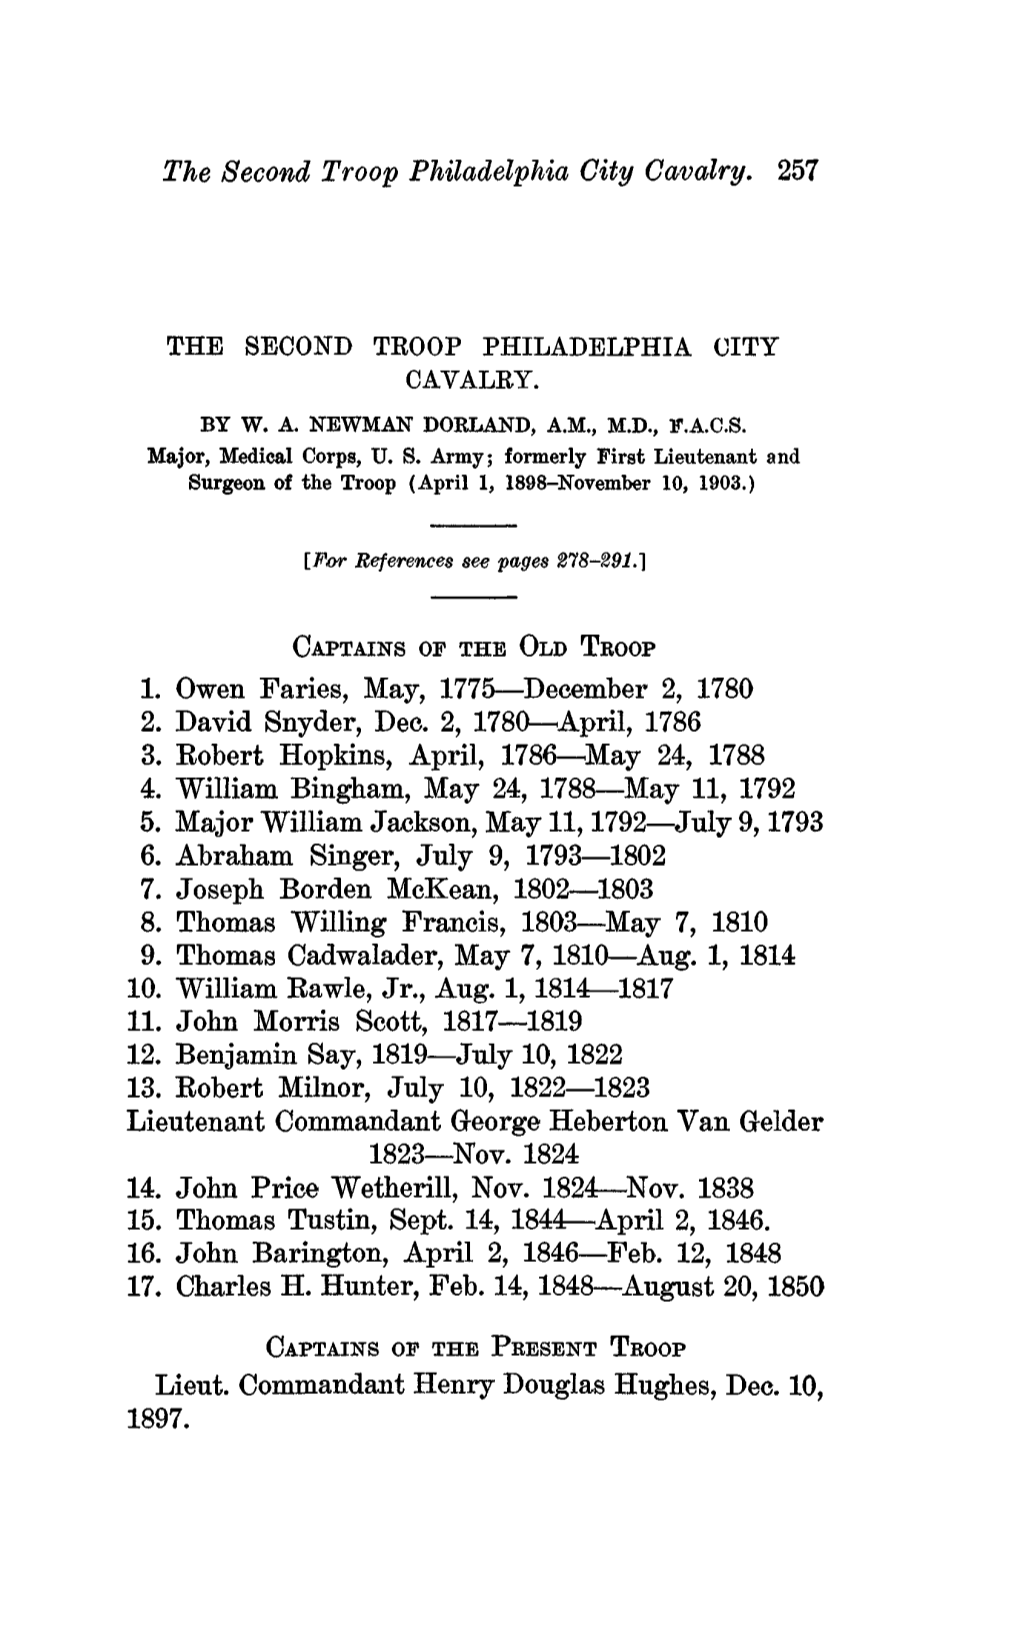 The Second Troop Philadelphia City Cavalry. 257 1. Owen Faries, May, 1775—December 2, 1780 2. David Snyder, Dec. 2, 1780—Apr